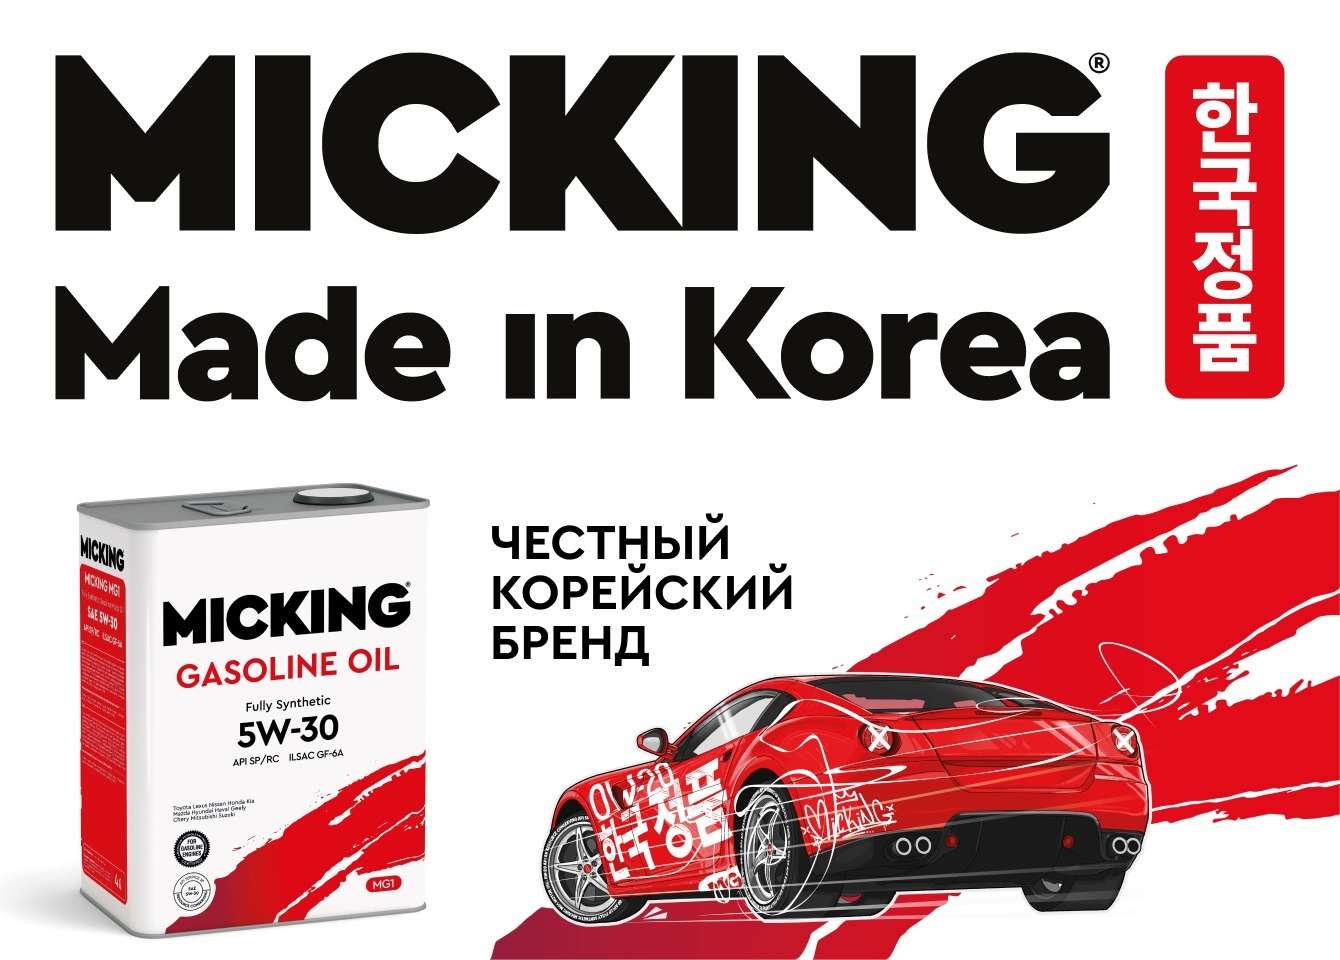 MICKING  моторное масло из Южной Кореи